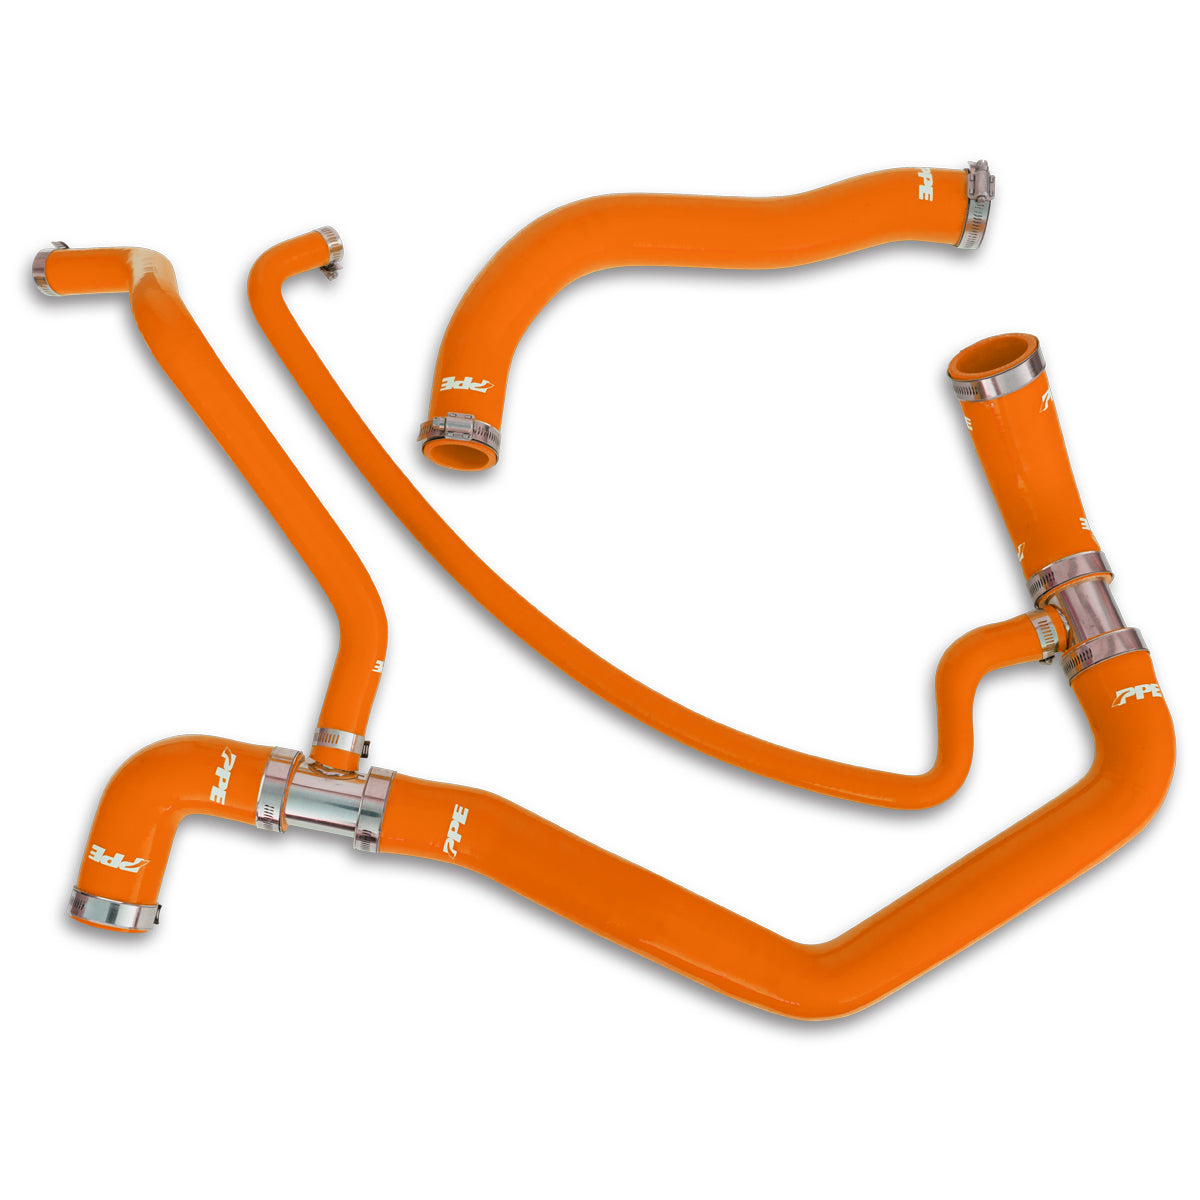 Coolant Hose Kit 01-05 LB7 LLY Orange PPE Diesel